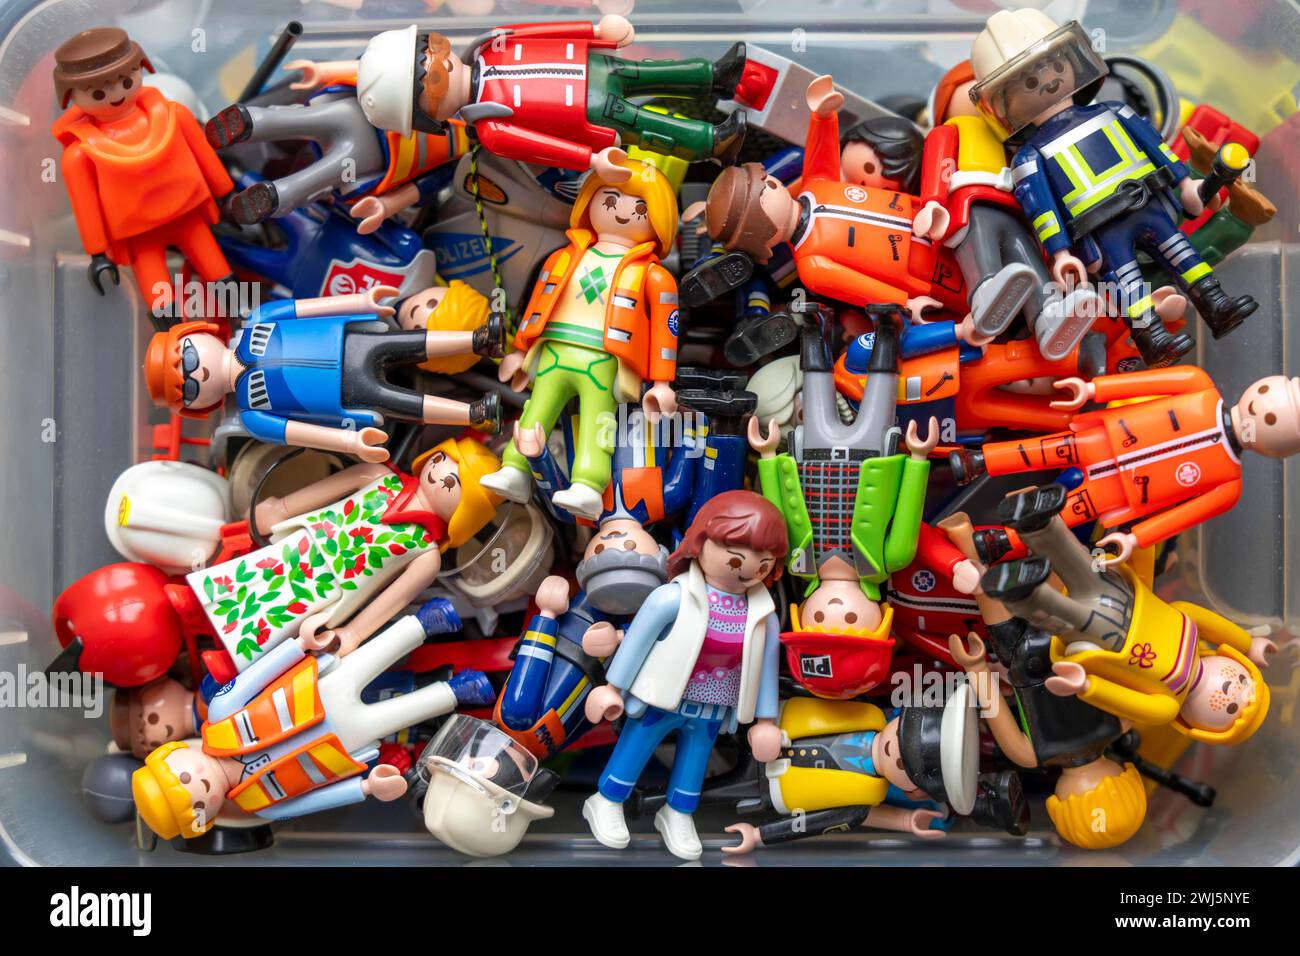 Tanti personaggi Playmobil diversi in una scatola, giocattoli di plastica, stanza dei bambini, Foto Stock